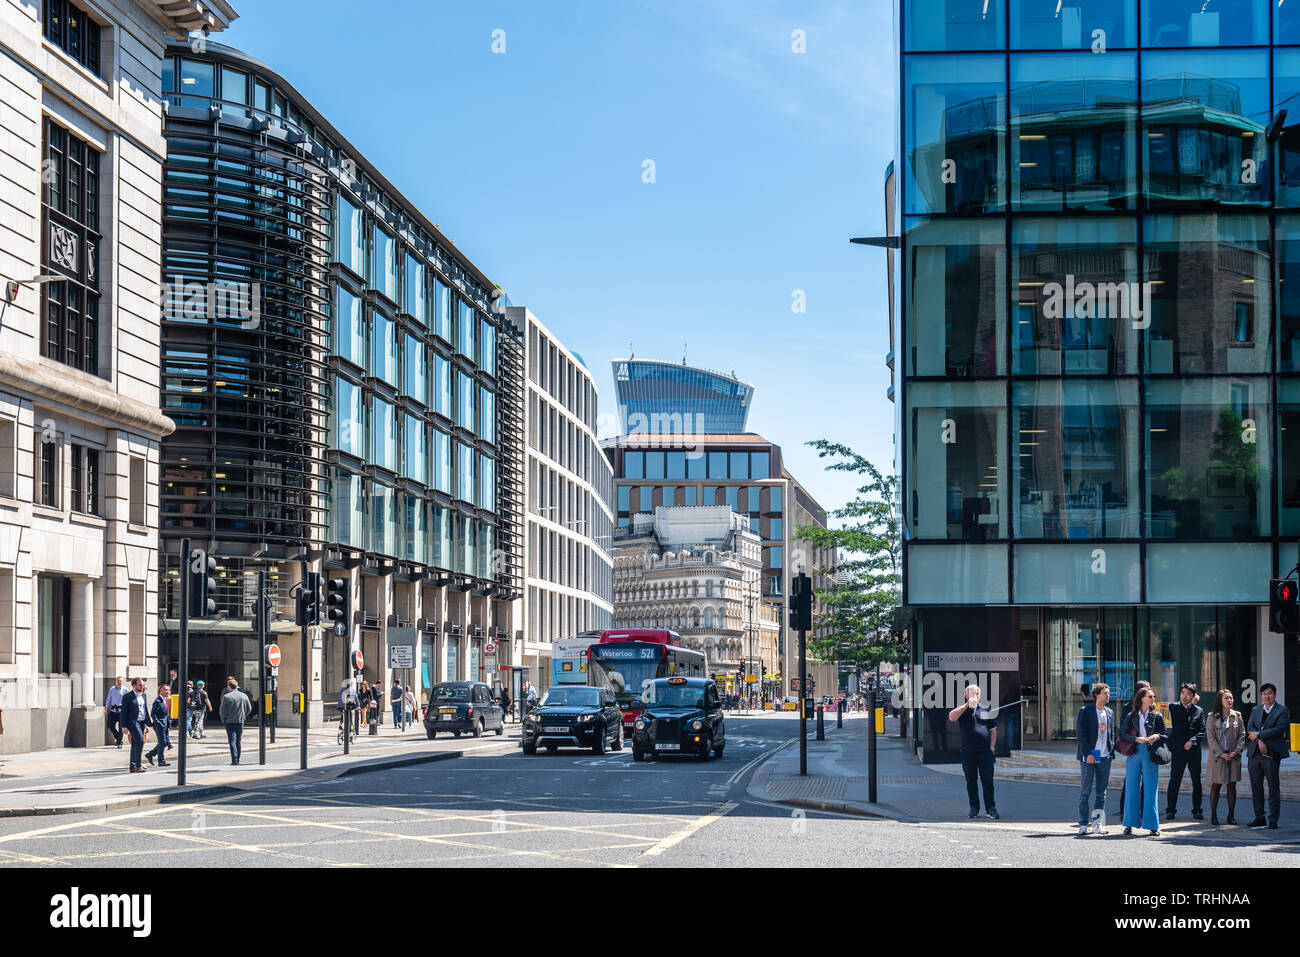 Londres, Royaume-Uni - 14 mai 2019 : Cannon Street dans la ville de Londres d'une journée ensoleillée Banque D'Images